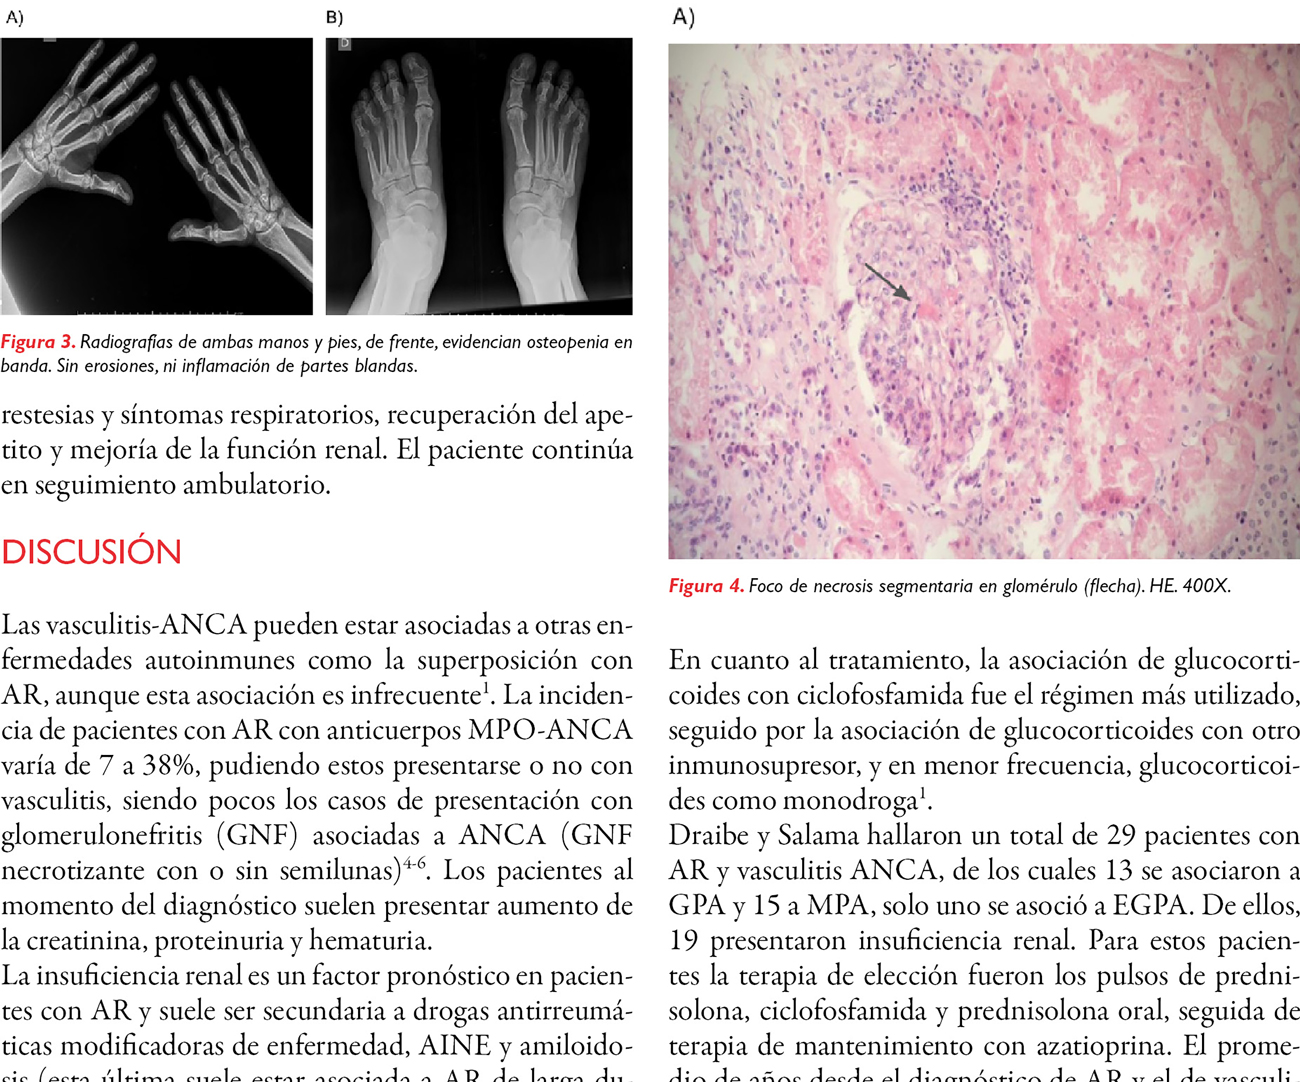 Vasculitis ANCA y artritis reumatoide como presentación contemporánea